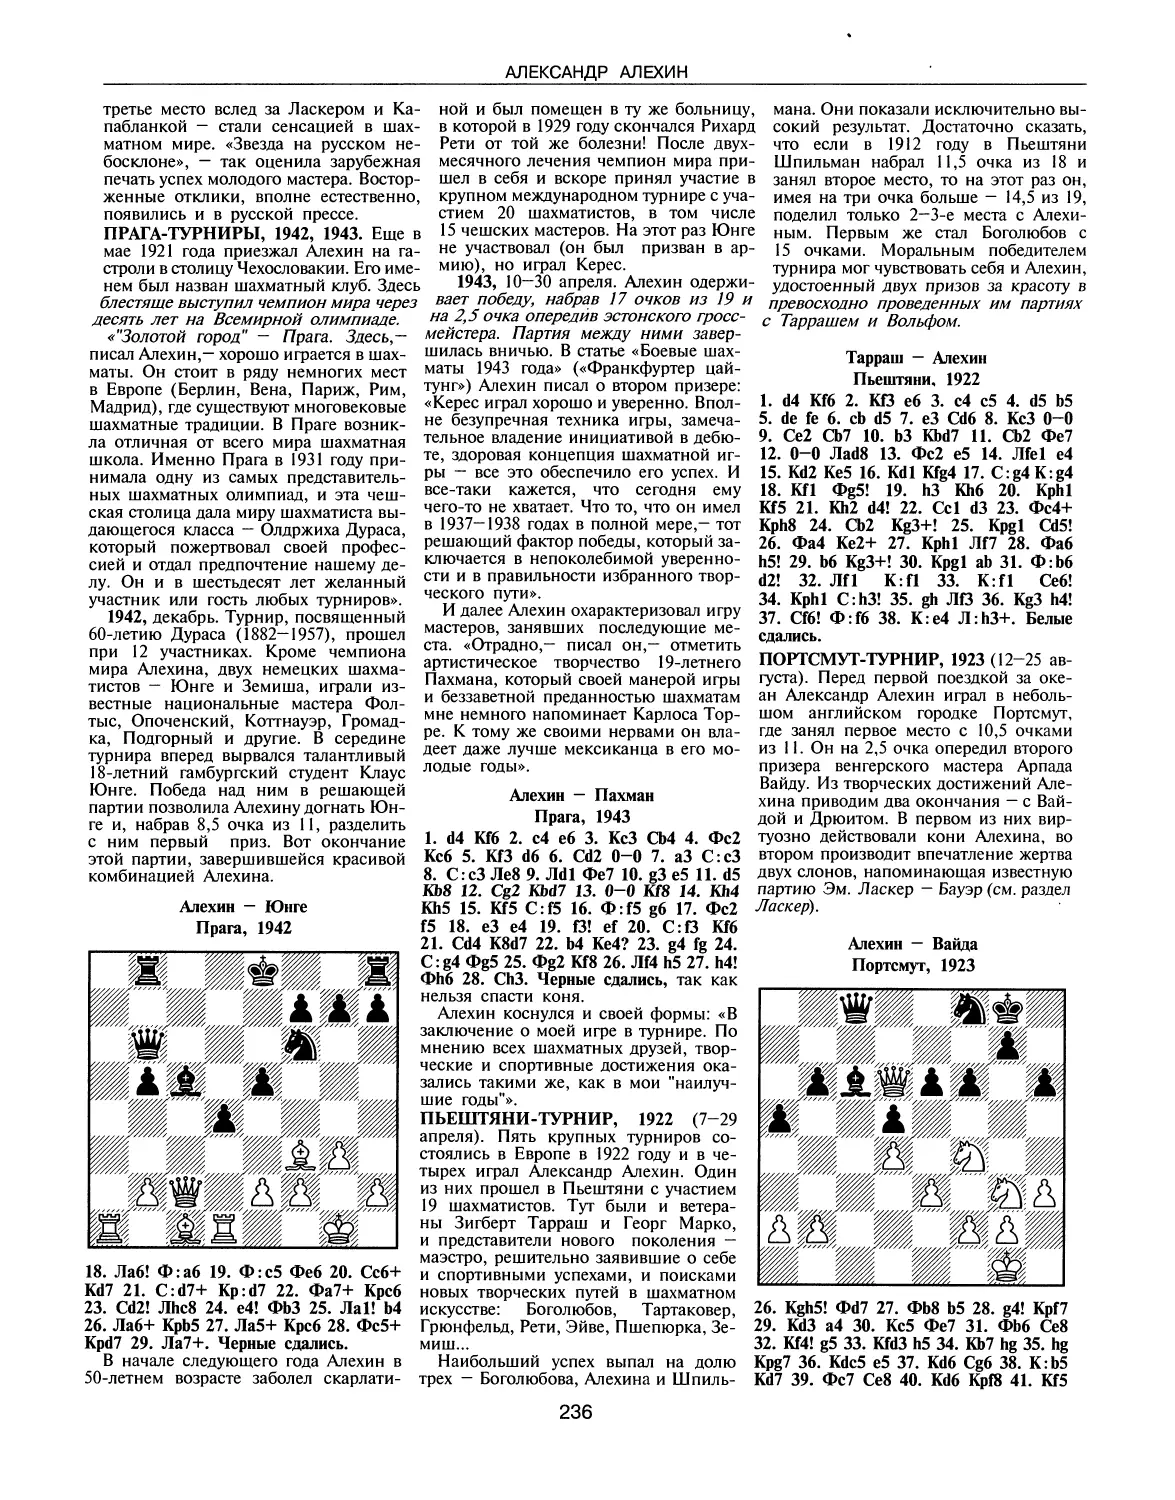 Прага-турниры, 1942, 1943
Пьештяни-турнир, 1922
Портсмут-турнир, 1923